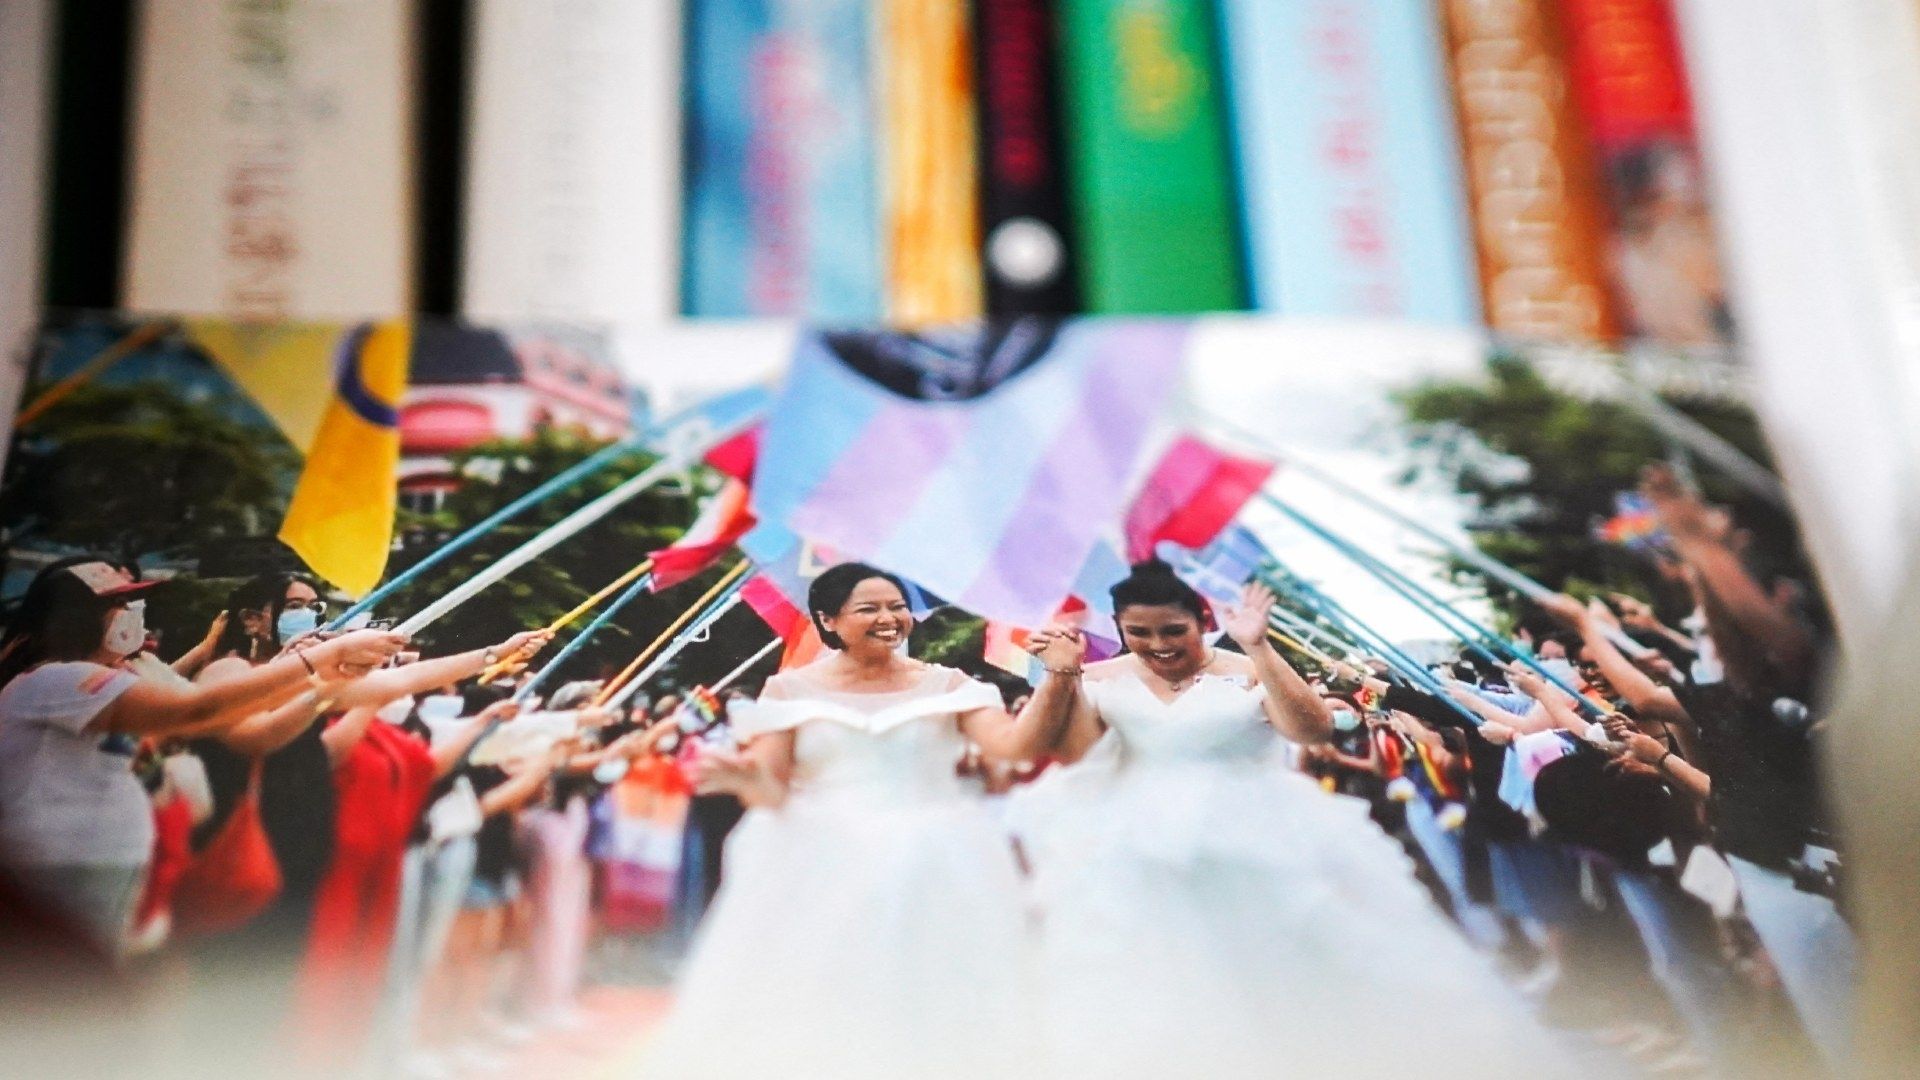 Tailandia Legaliza El Matrimonio Gay, Entraría en Vigor a Finales de Año